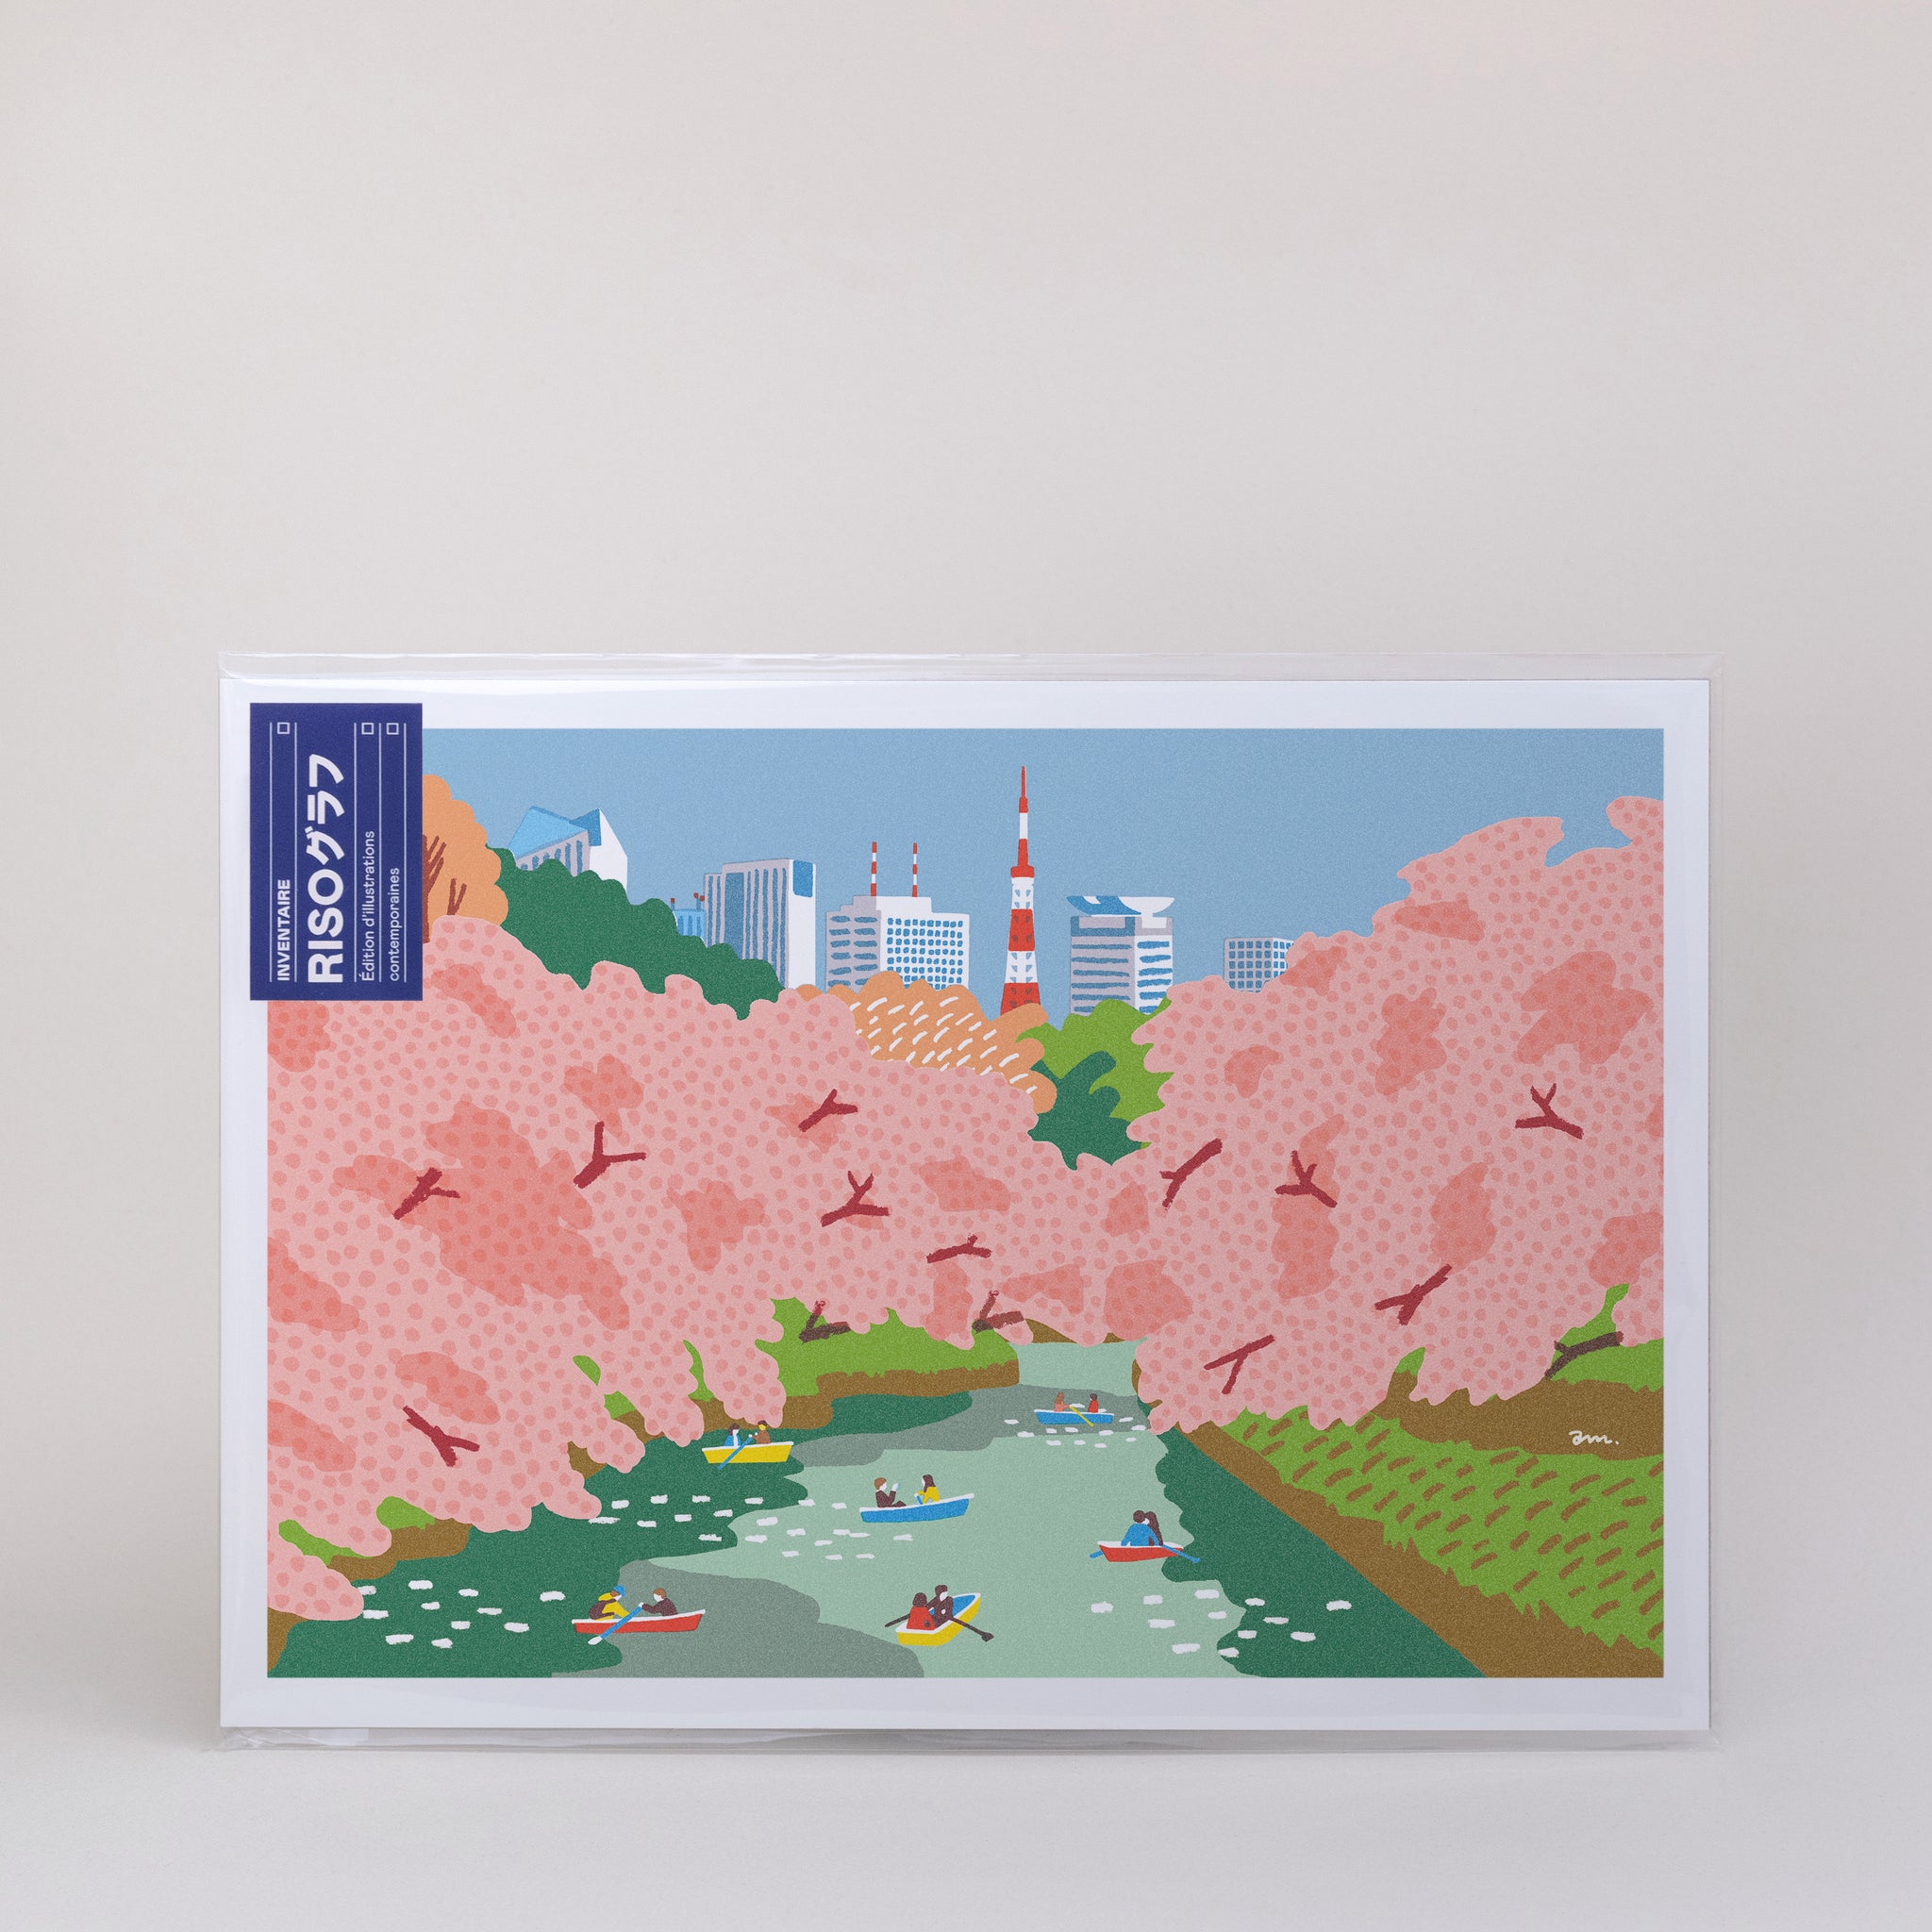 Risographie – Sakura